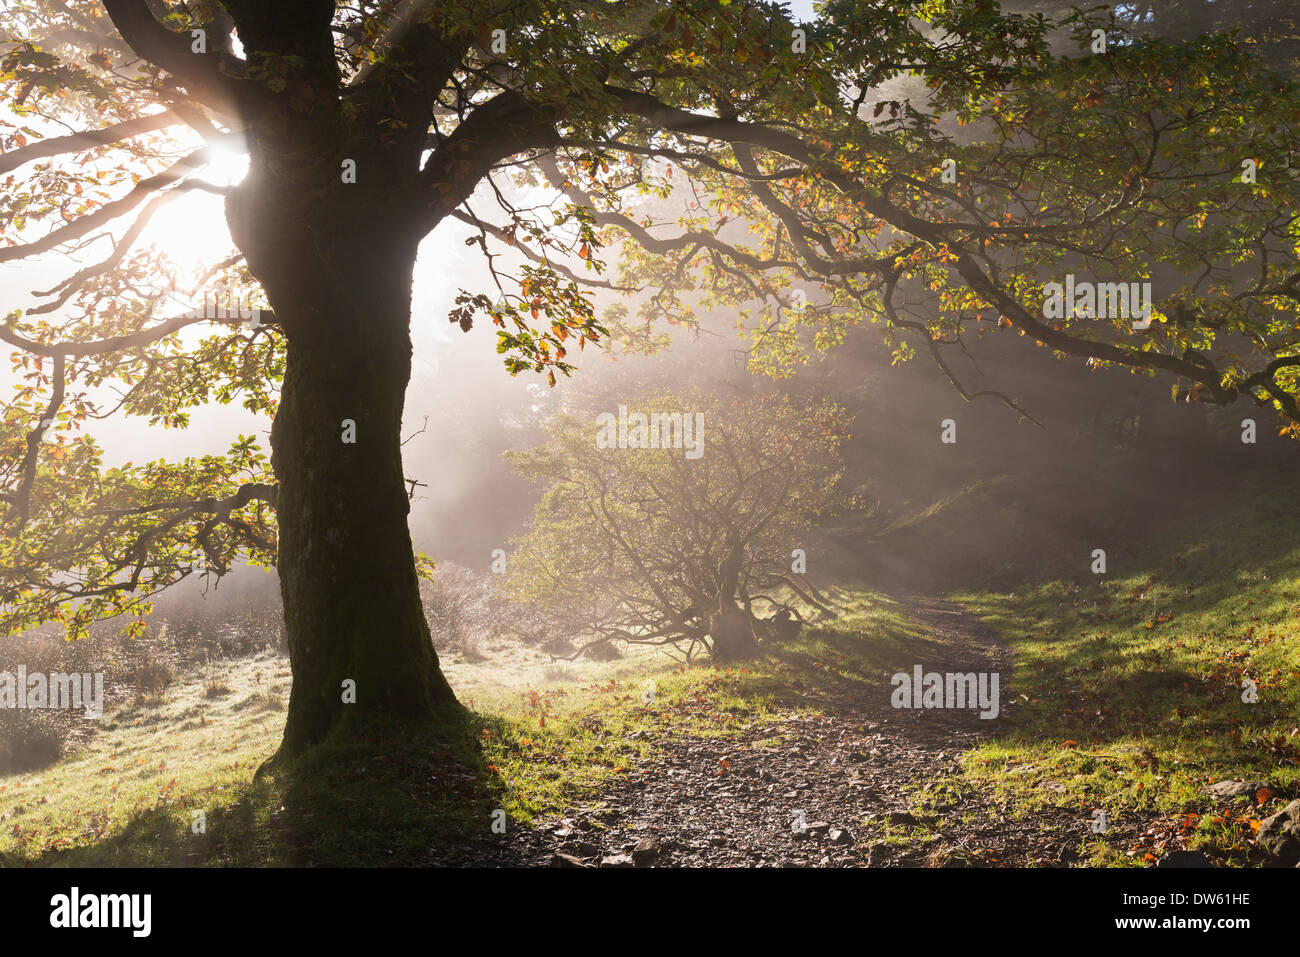 Lake District sinueuse à travers bois, sentier Holme Loweswater, Cumbria, Angleterre. L'automne (novembre) 2013. Banque D'Images